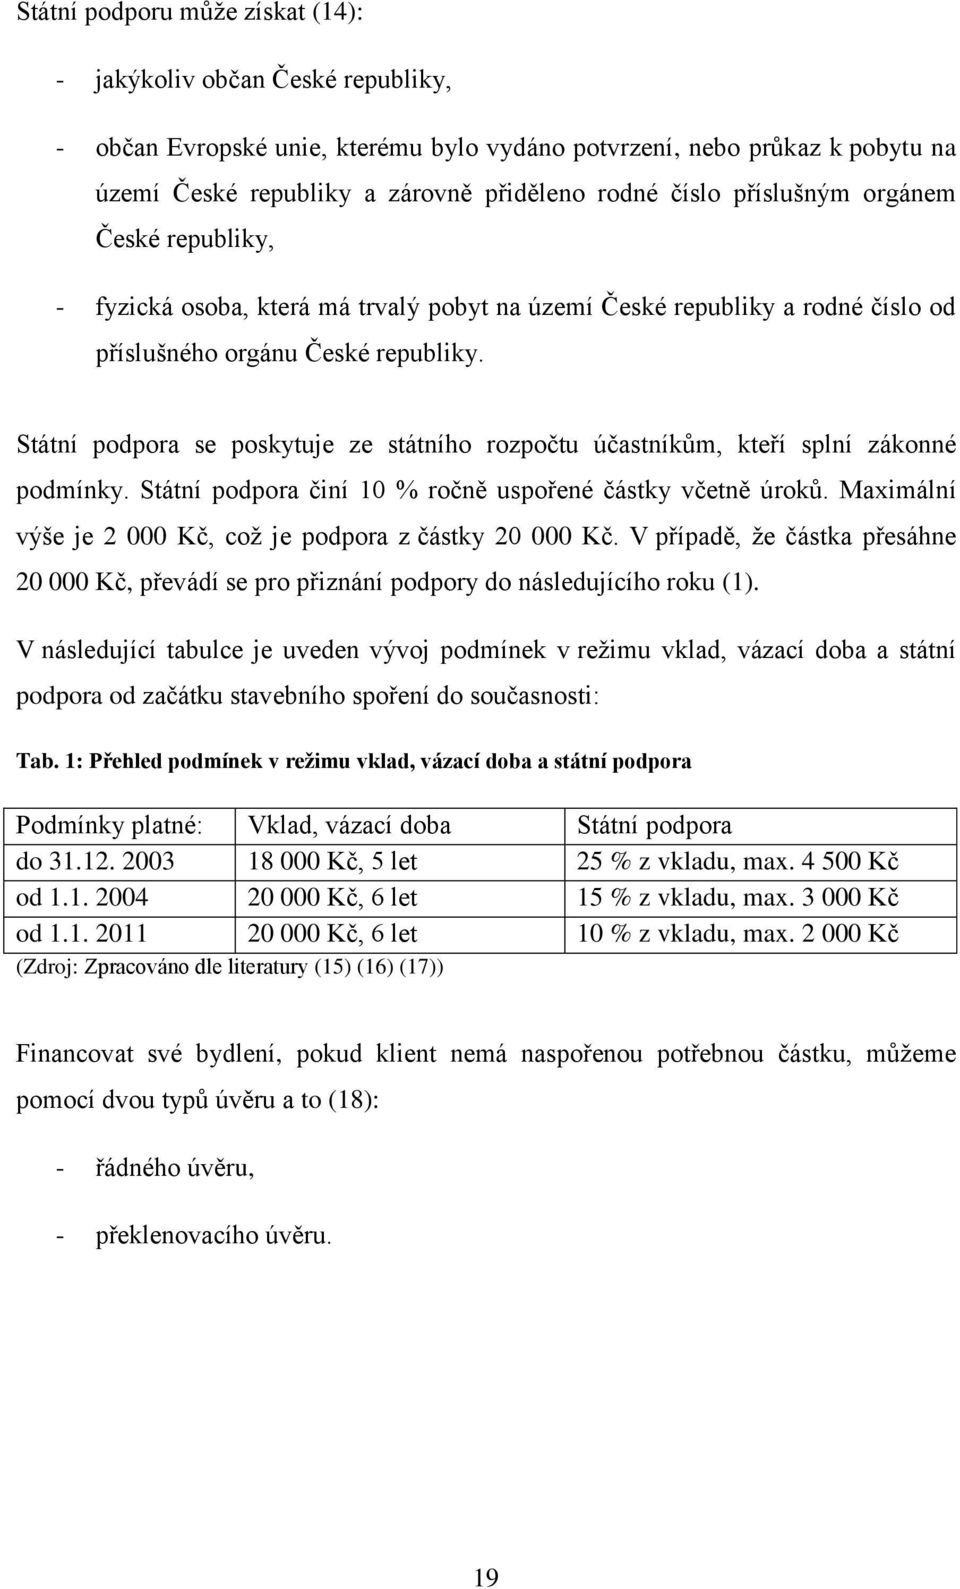 MOŽNOSTI FINANCOVÁNÍ BYDLENÍ V ČESKÉ REPUBLICE - PDF Stažení zdarma